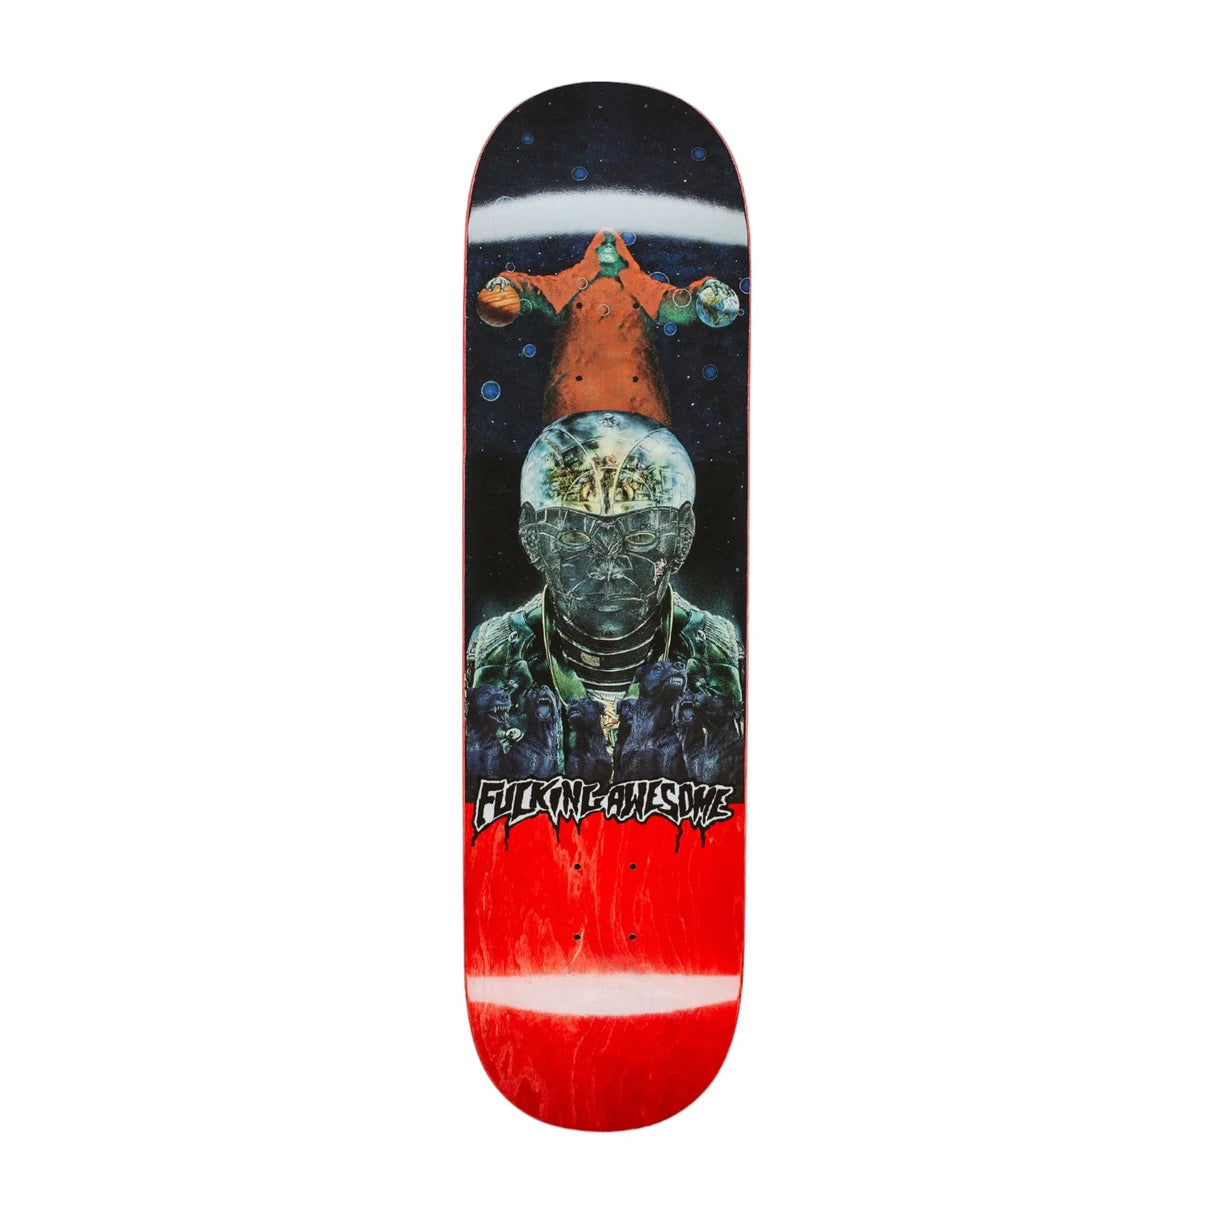 Fucking Awesome Kevin Bradley K9 Galaxy 8.38" Skateboard Deck